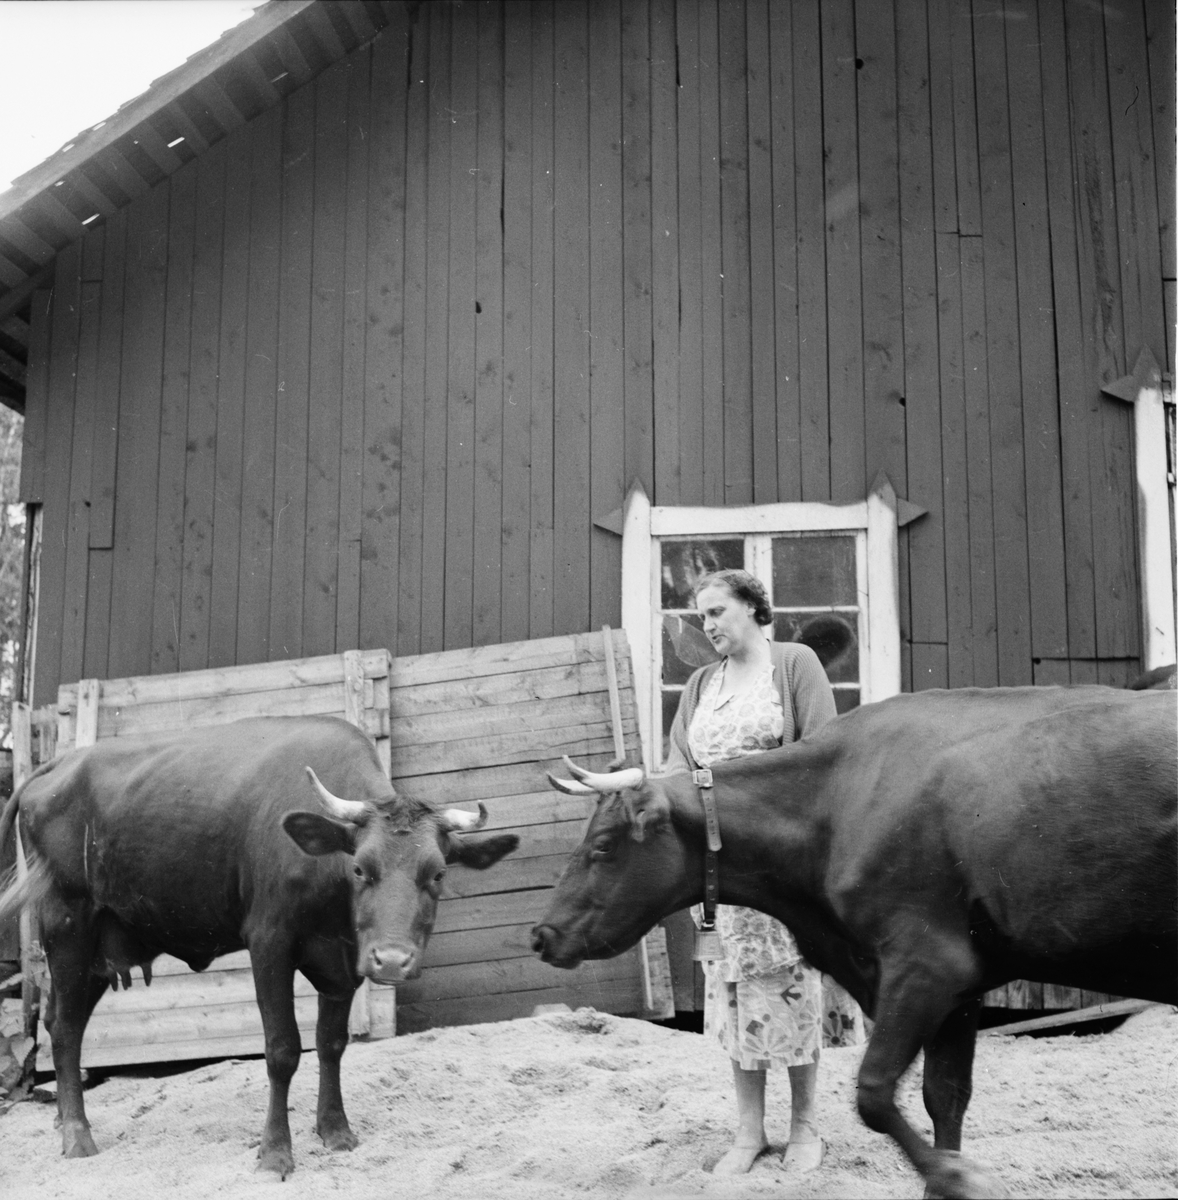 Småströmmarna.
By i Skog A. Boberg
3/8 1957